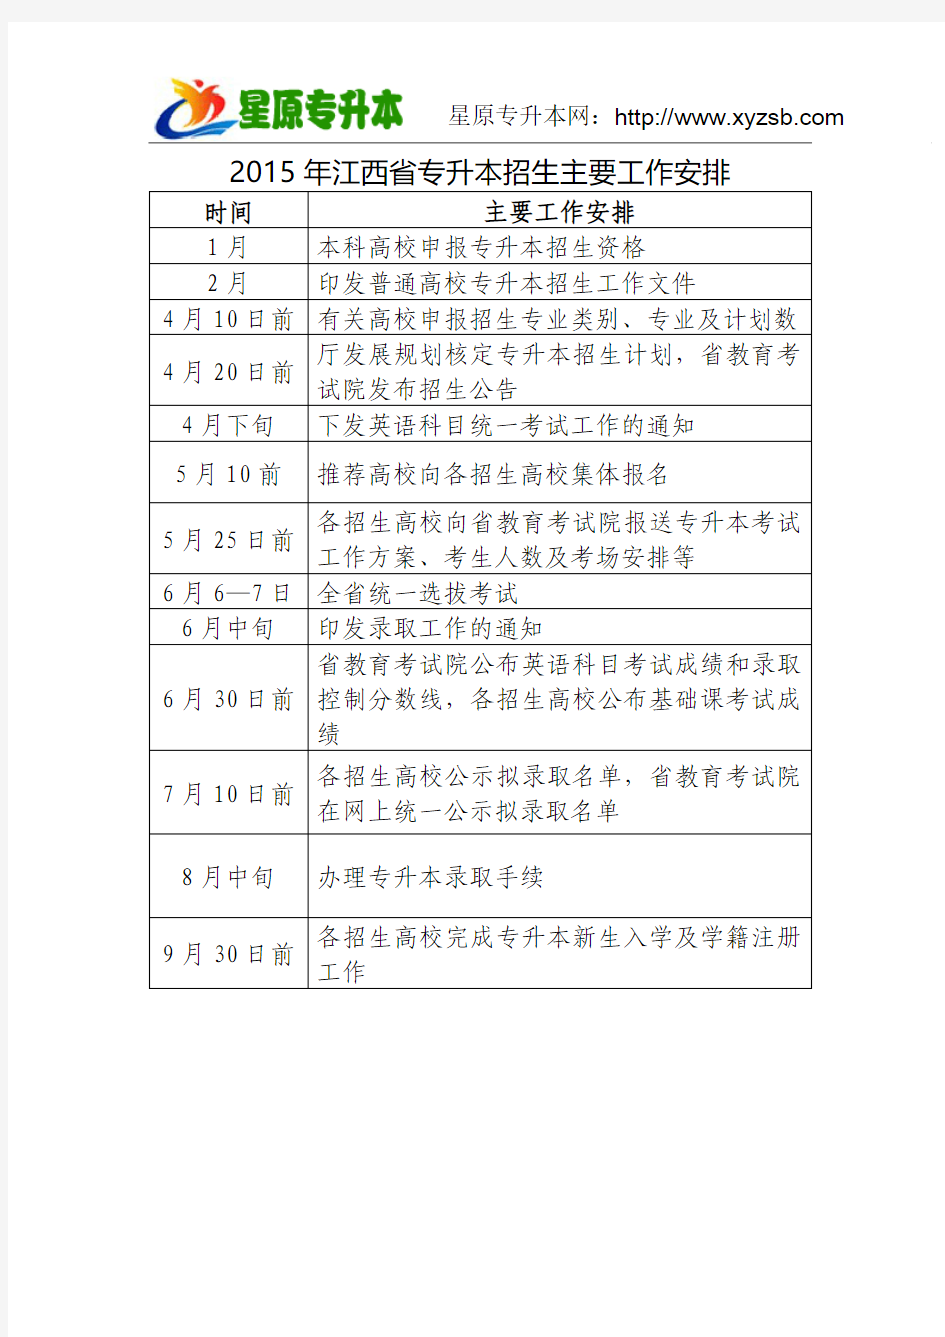 2015年江西省专升本招生主要工作安排